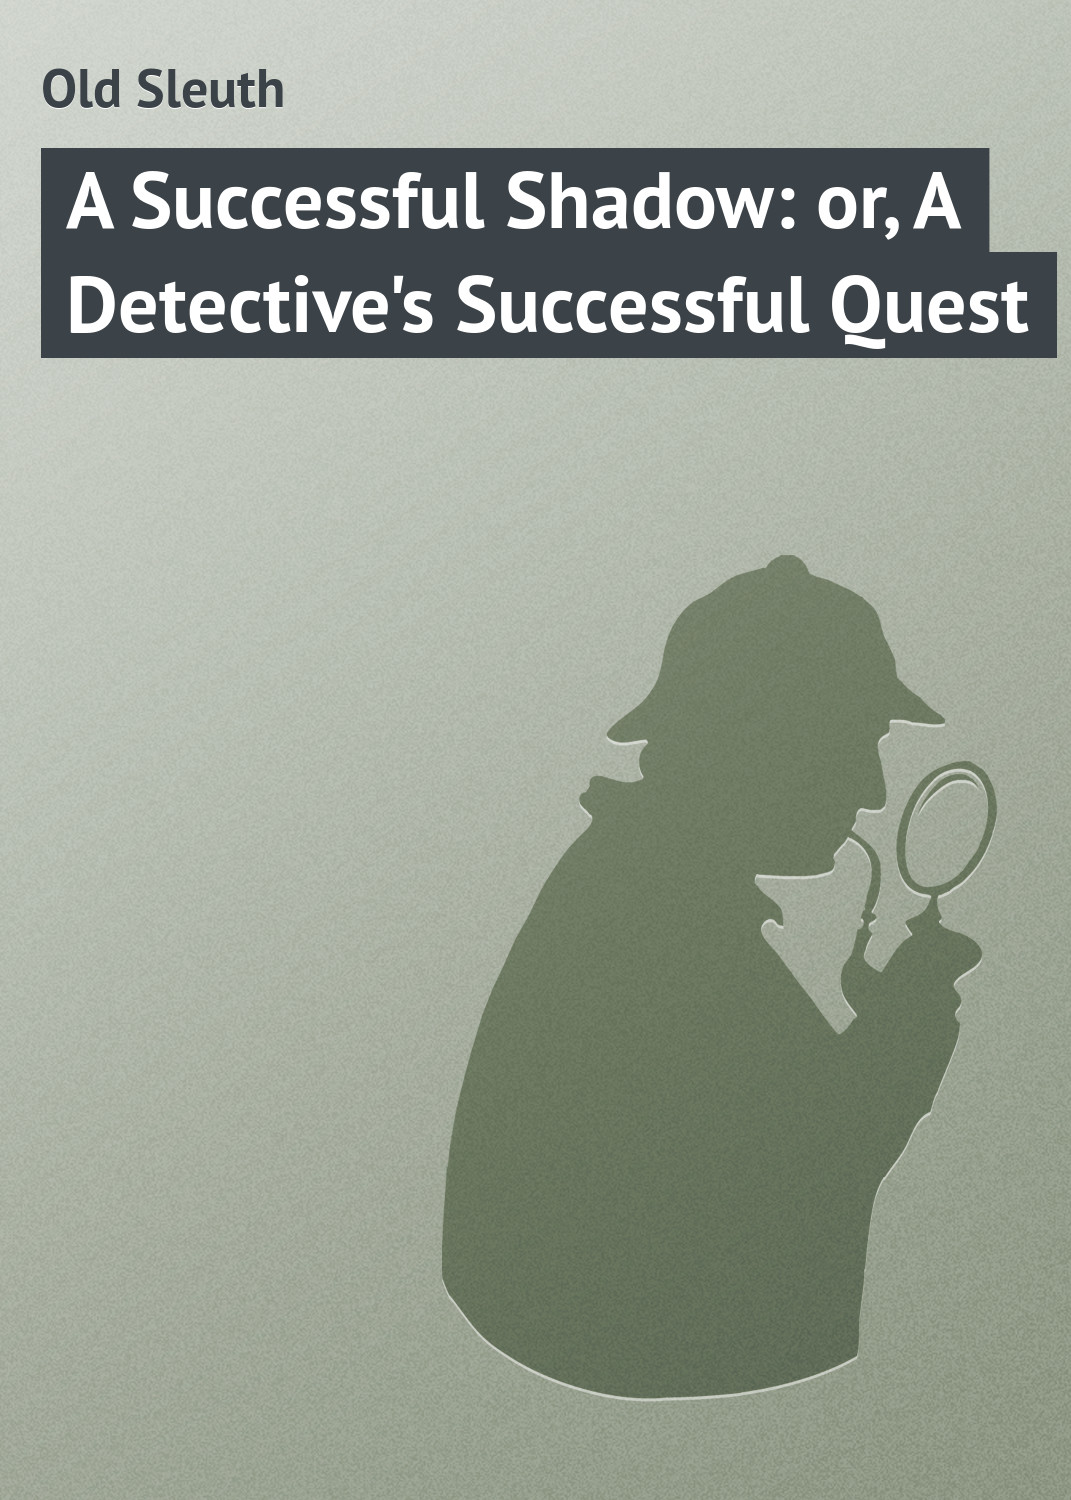 Книга A Successful Shadow: or, A Detective's Successful Quest из серии , созданная Sleuth Old, может относится к жанру Иностранные языки, Литература 19 века, Классические детективы, Зарубежные детективы, Зарубежная классика. Стоимость электронной книги A Successful Shadow: or, A Detective's Successful Quest с идентификатором 23164427 составляет 5.99 руб.